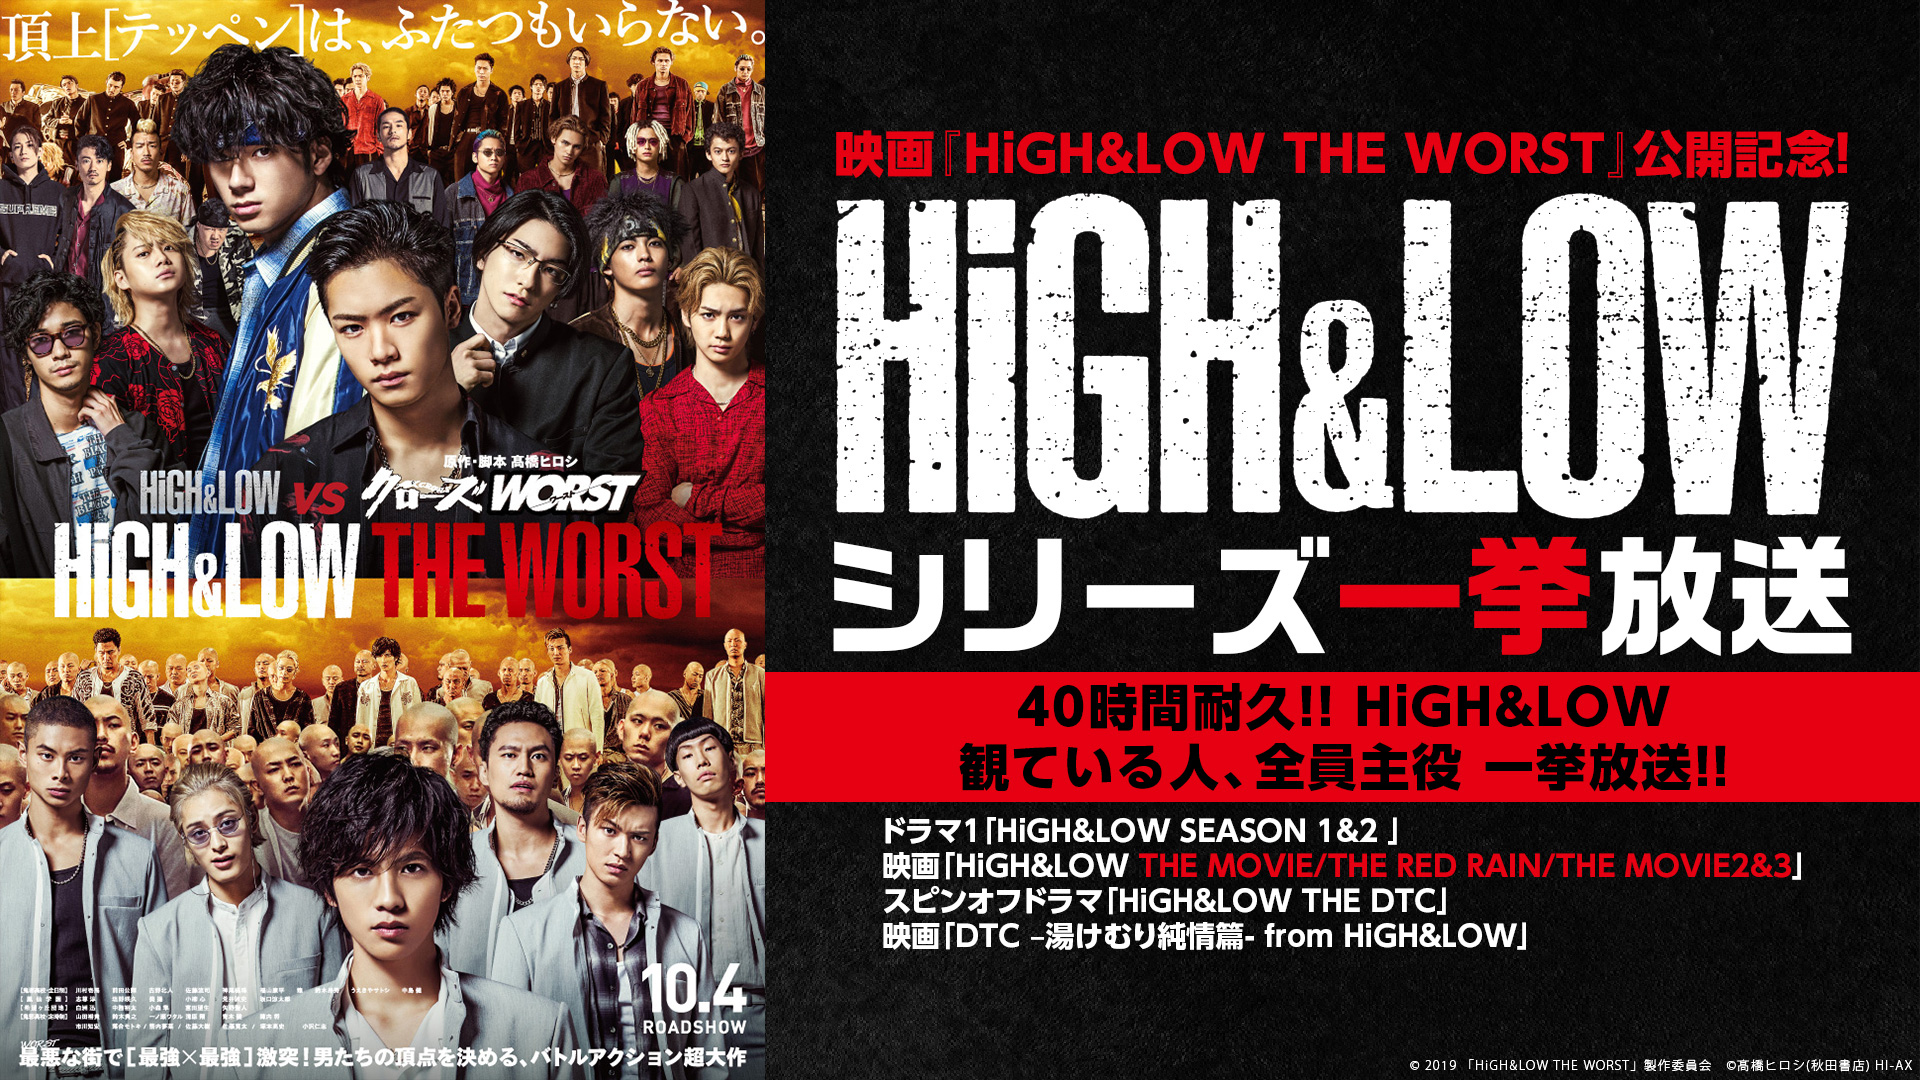 映画 High Low The Worst 公開記念 High Low シリーズ8作品の一挙放送が決定 10月4日 金 時放送開始